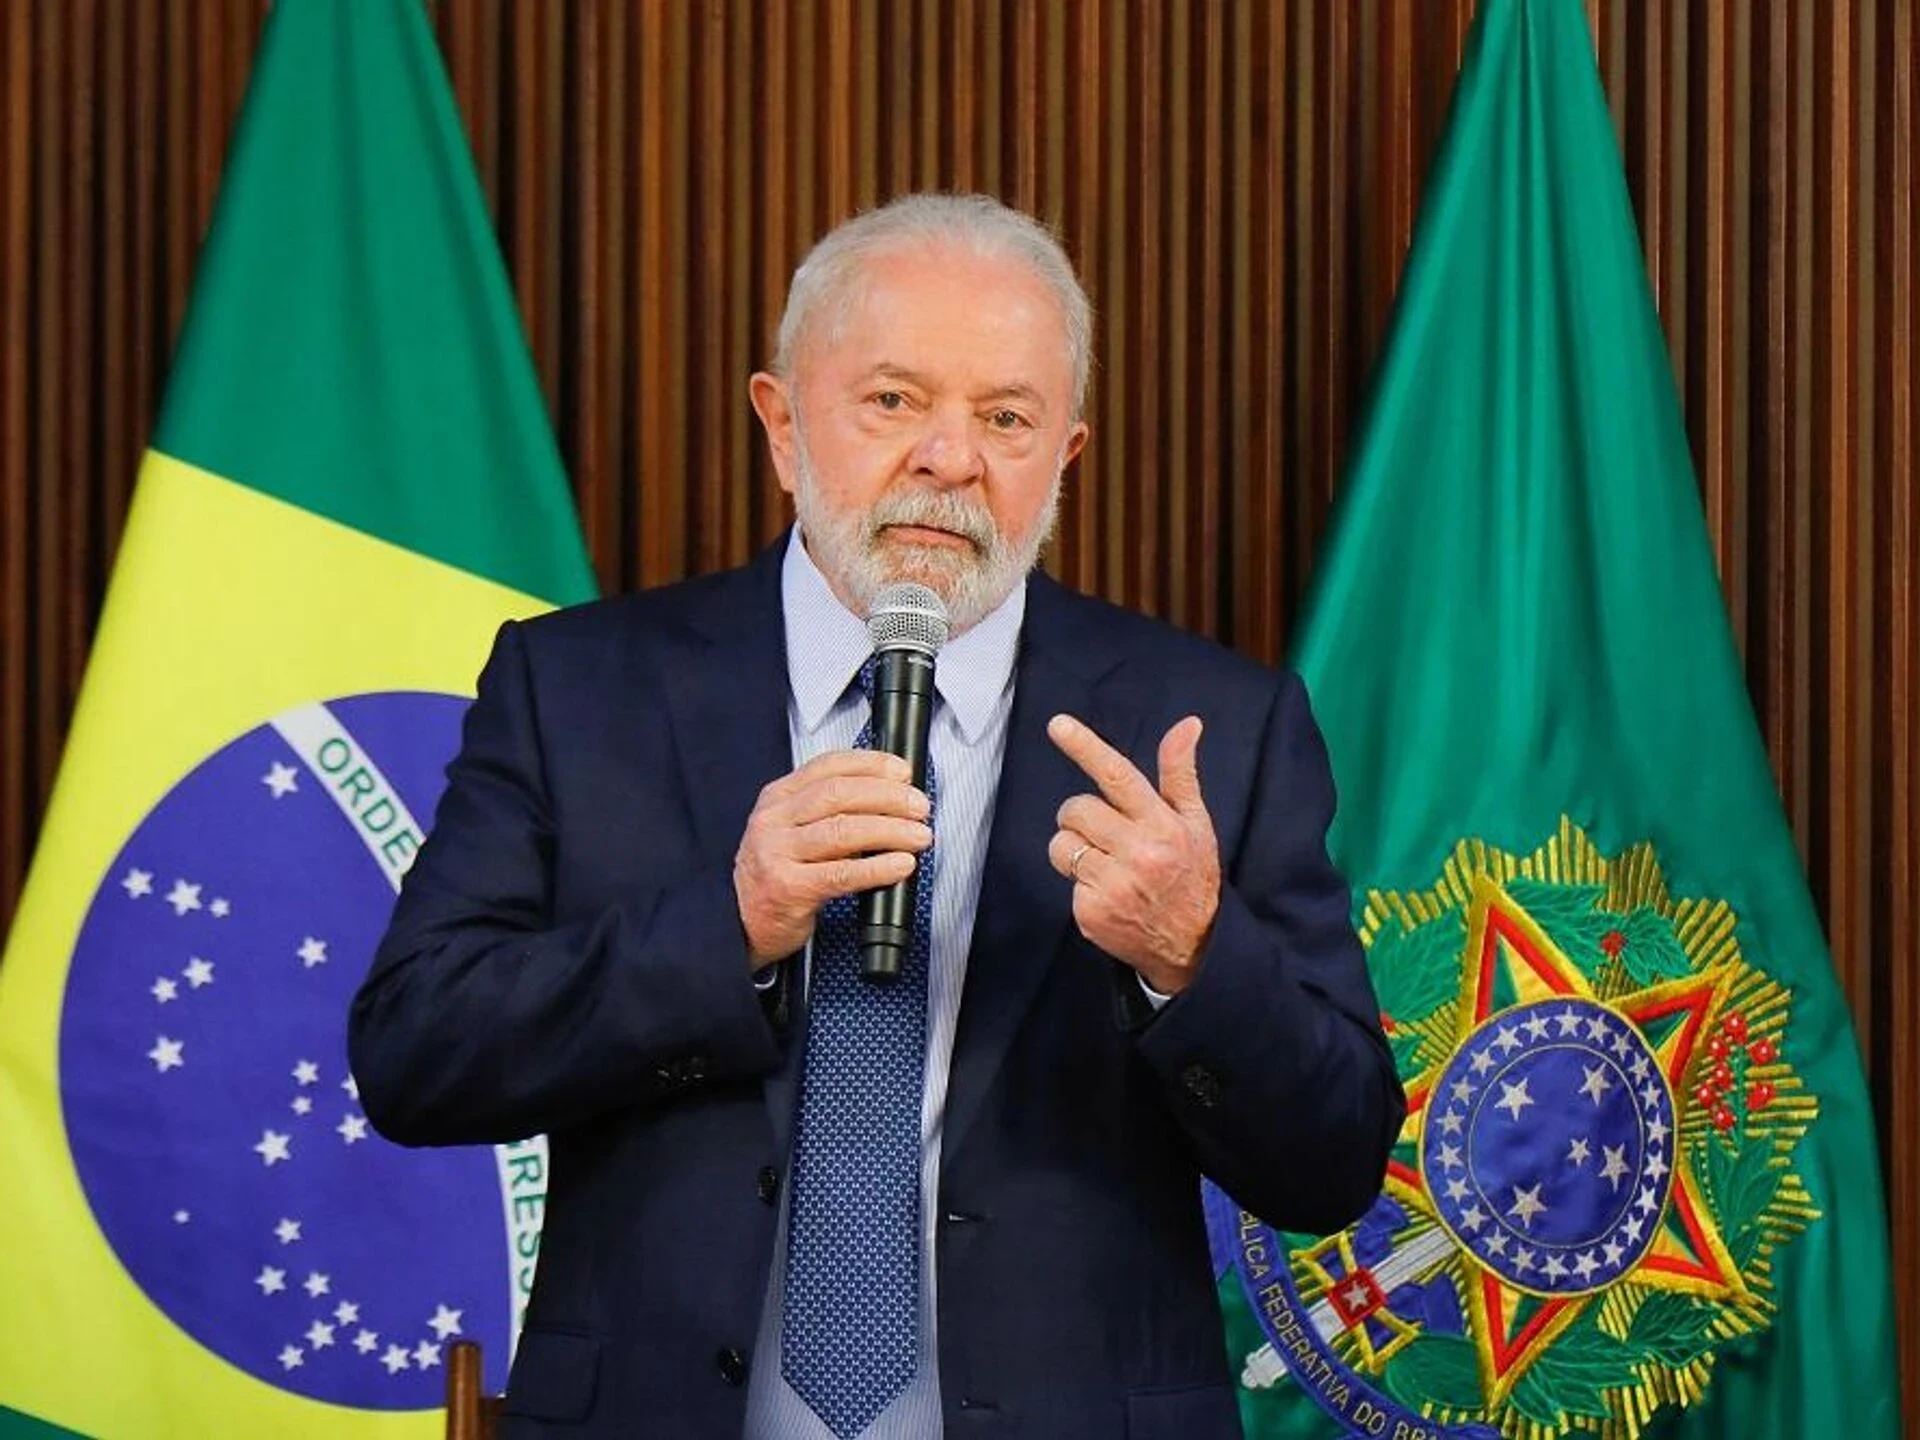 الرئيس البرازيلي دا سيلفا